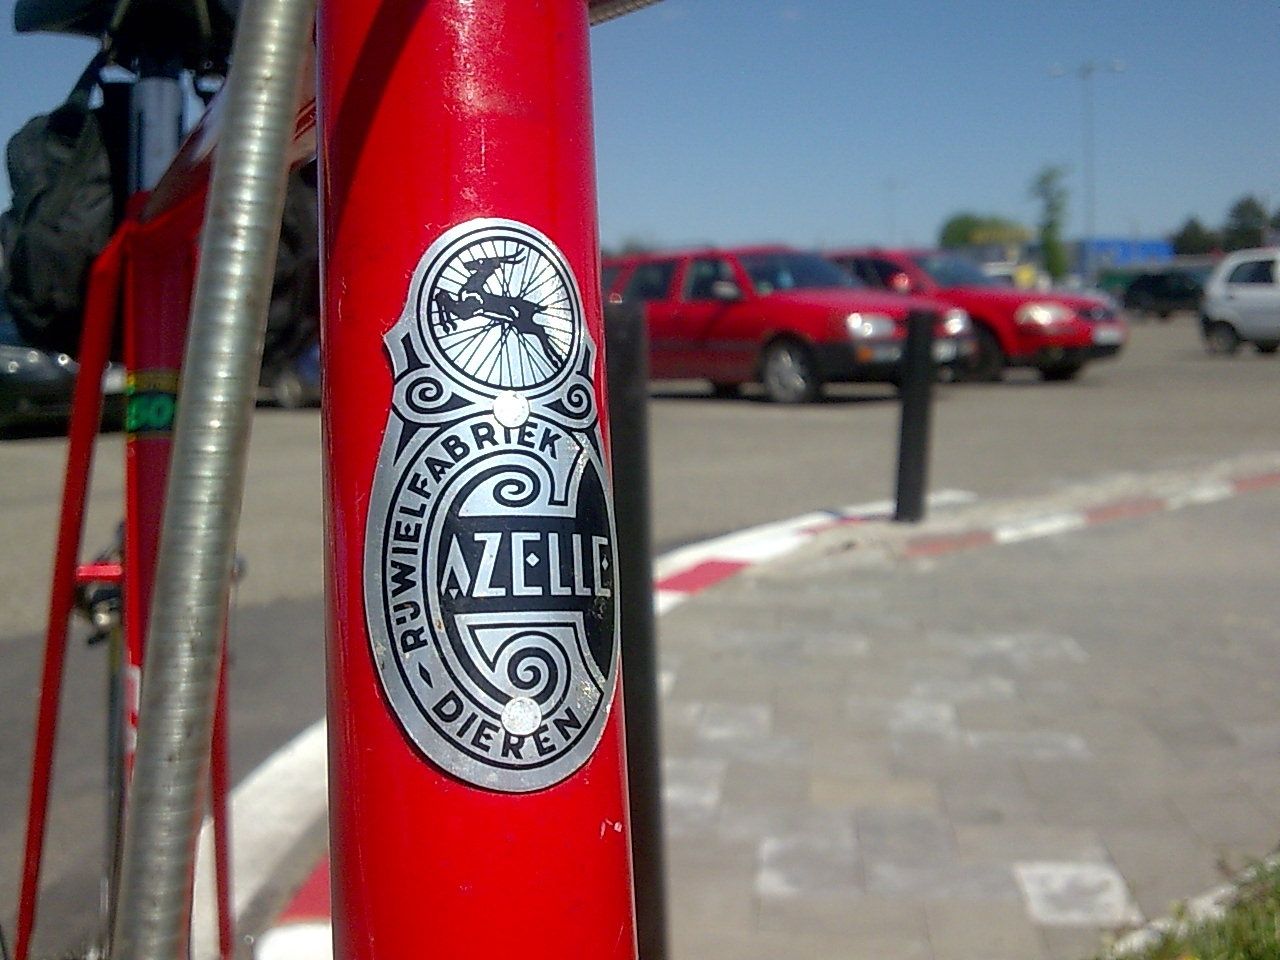 Bicicleta cursiera Gazelle Race, clasica, retro, anii 80'-profesionala